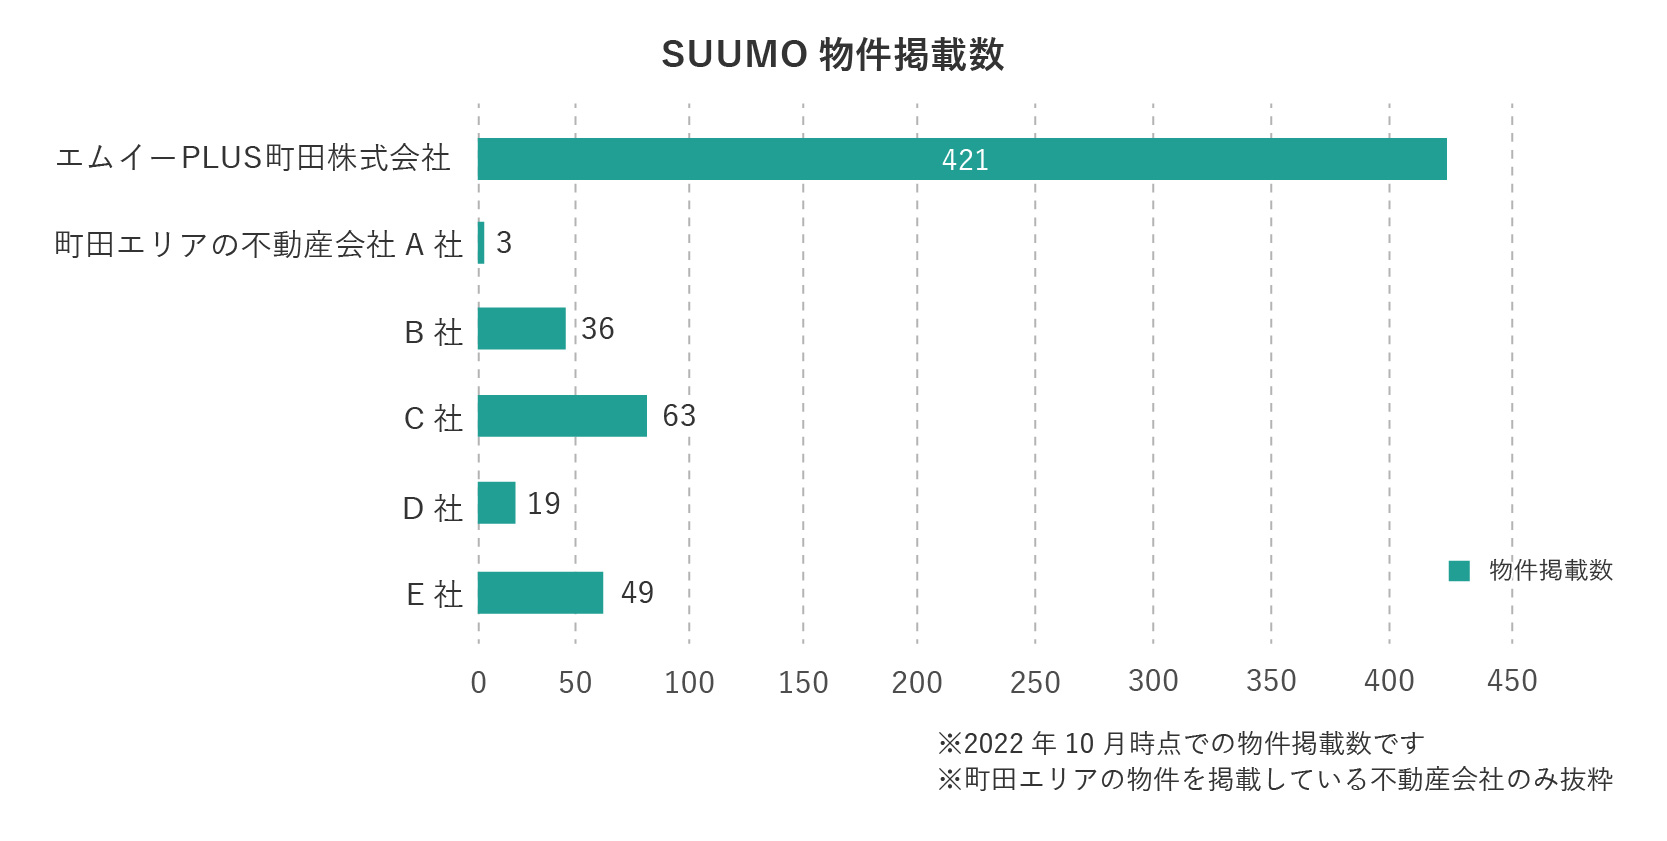 町田エリア不動産会社のSUUMO物件掲載数